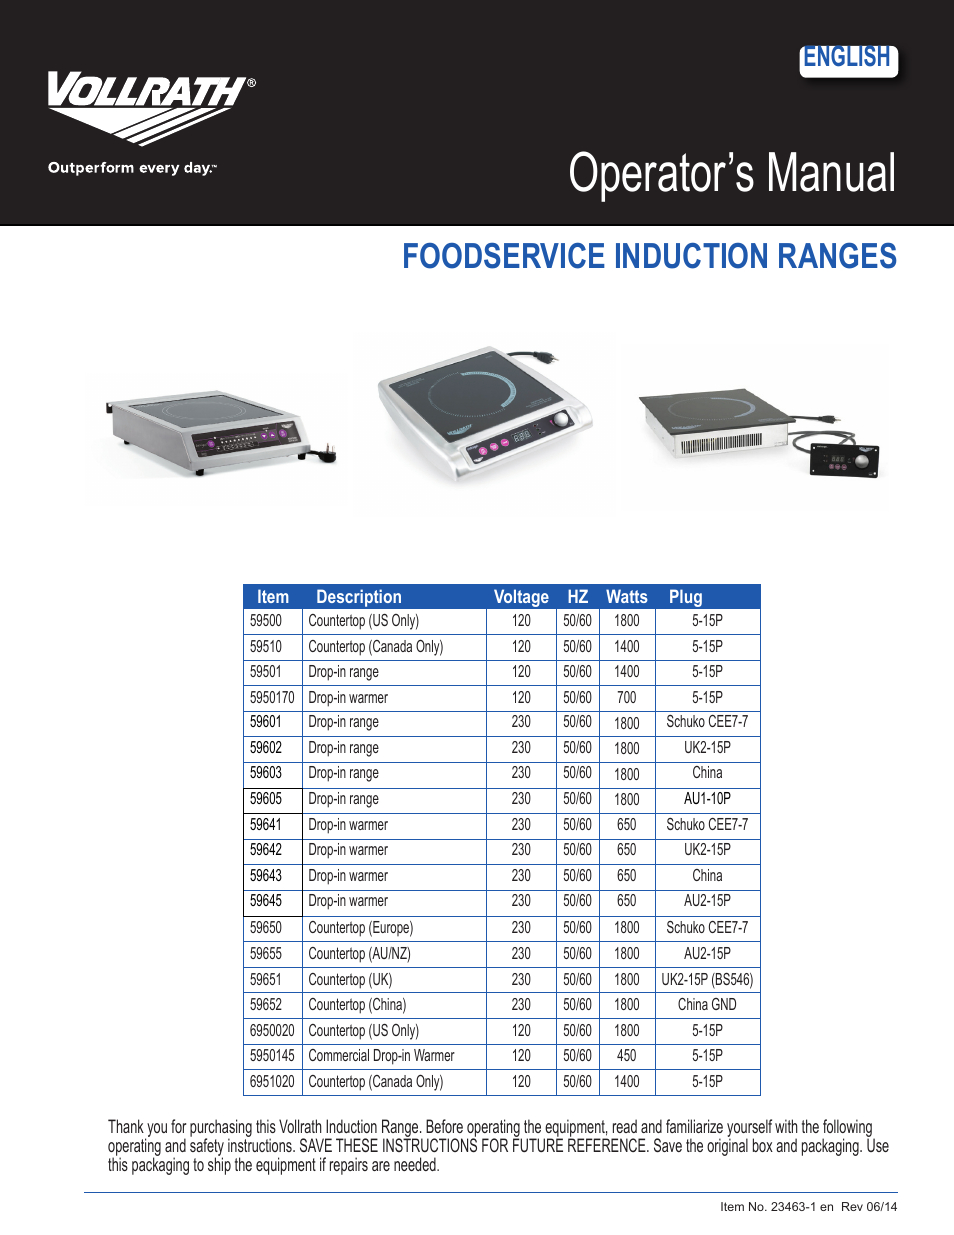 Mirage Standard 1800 Watt Countertop Induction Ranges